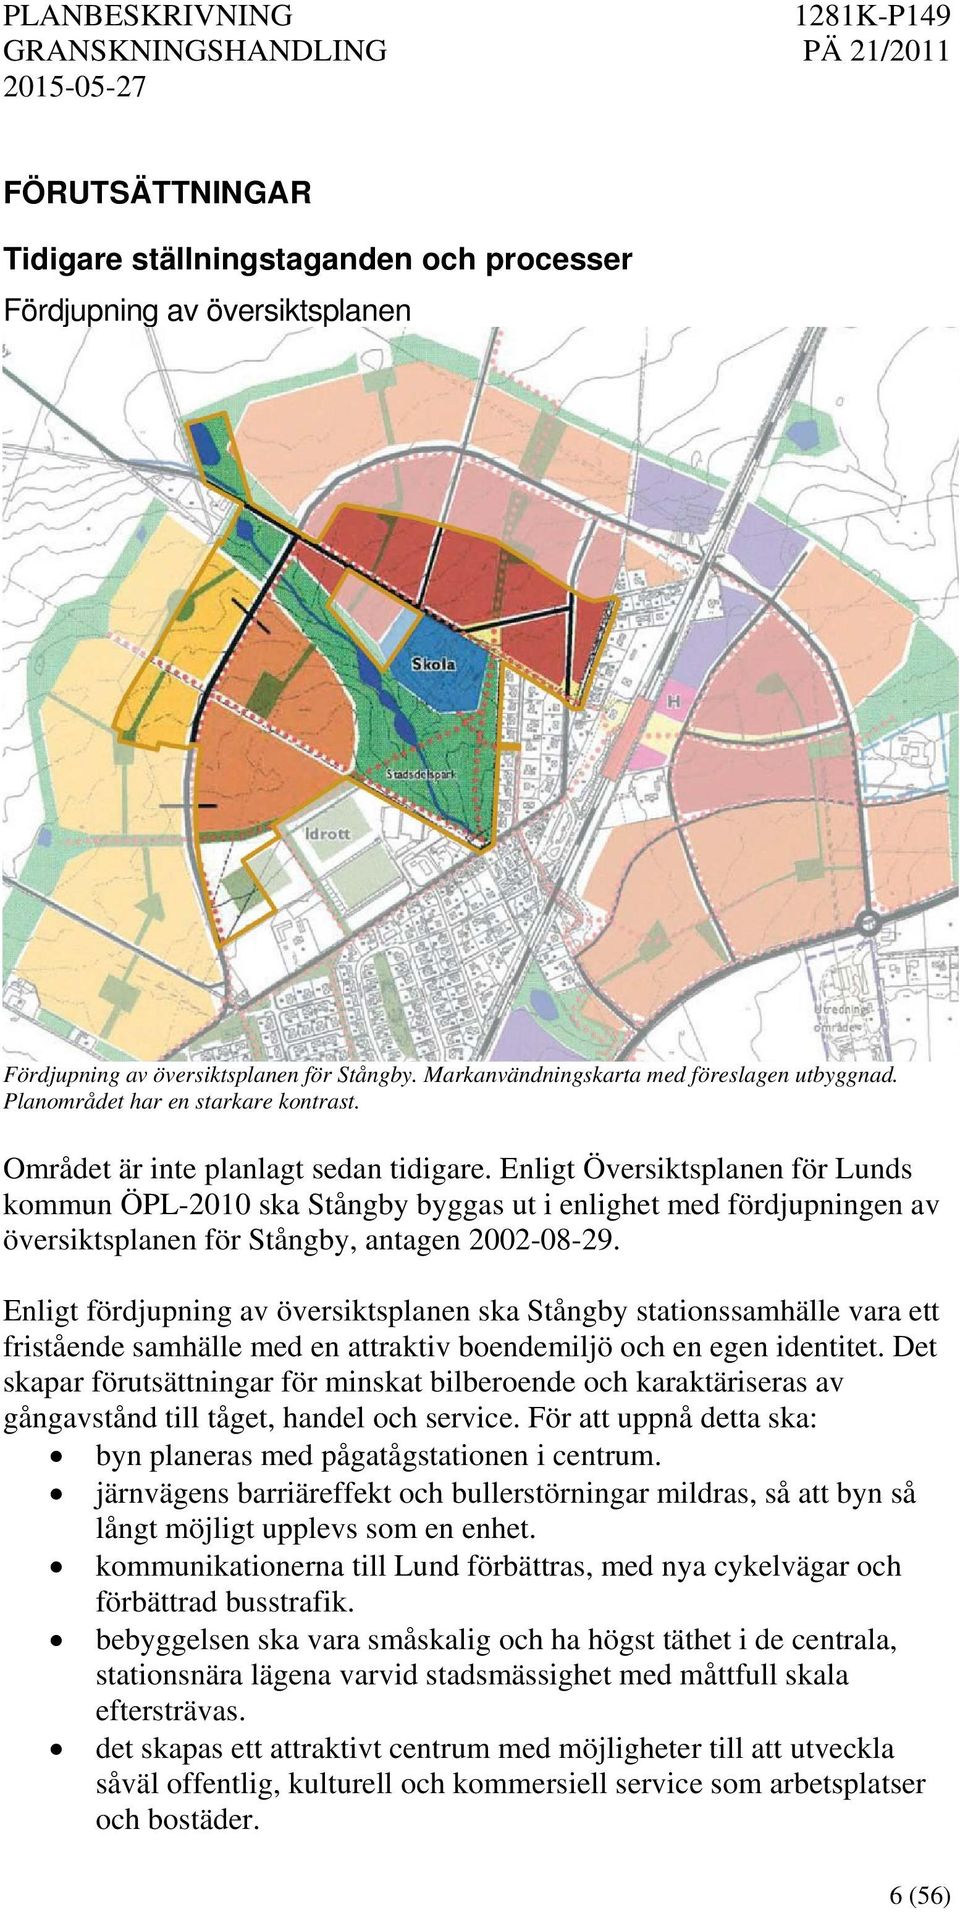 Enligt Översiktsplanen för Lunds kommun ÖPL-2010 ska Stångby byggas ut i enlighet med fördjupningen av översiktsplanen för Stångby, antagen 2002-08-29.